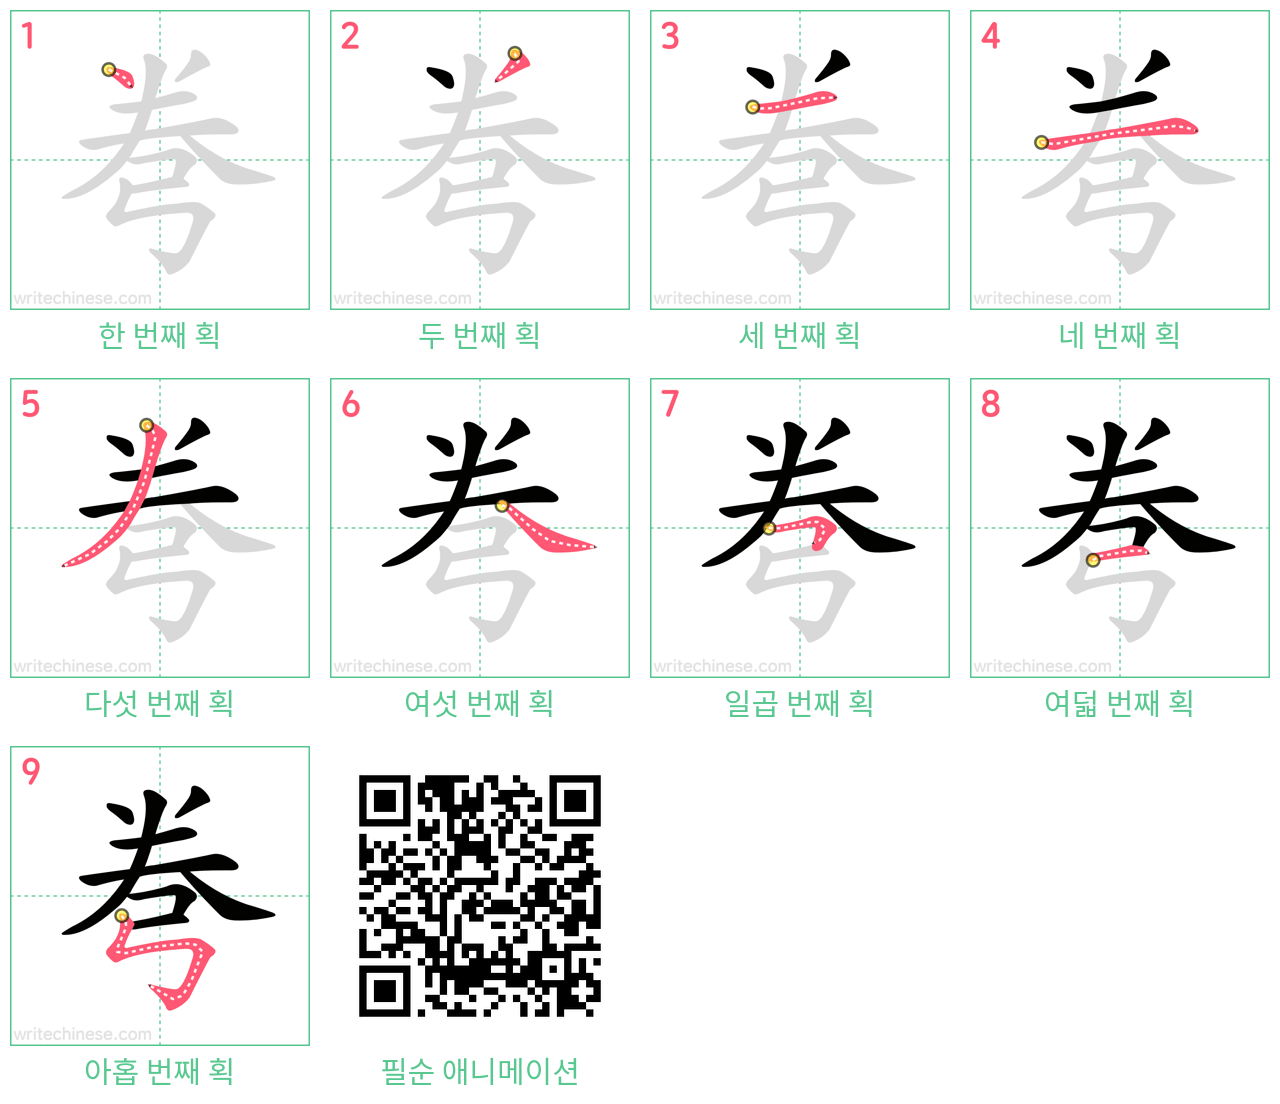 弮 step-by-step stroke order diagrams